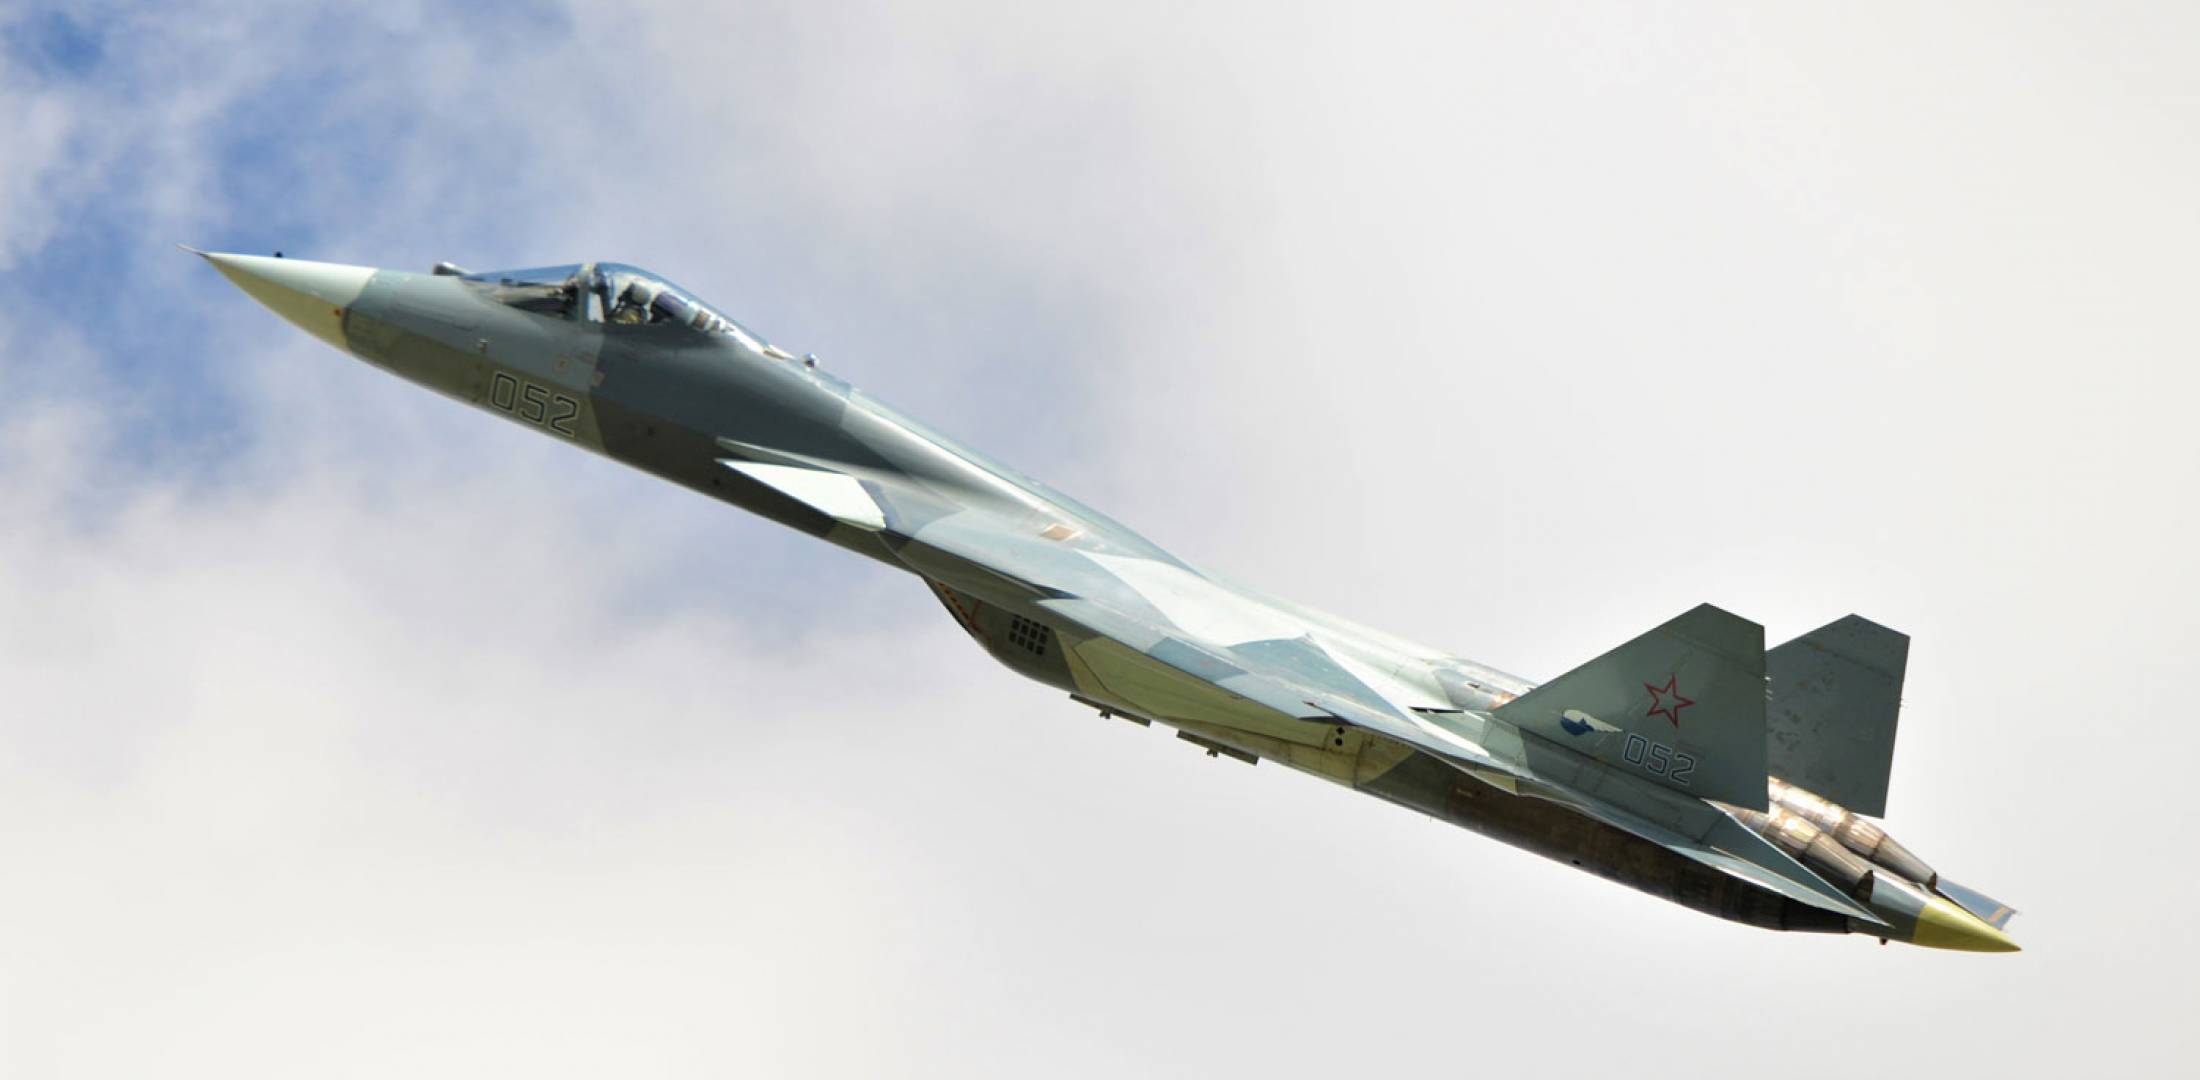 Η Τουρκία απειλεί ευθέως τις ΗΠΑ με αγορά υπερ-μαχητικών Su-57 από την Ρωσία αν δεν παραδοθούν τα F-35